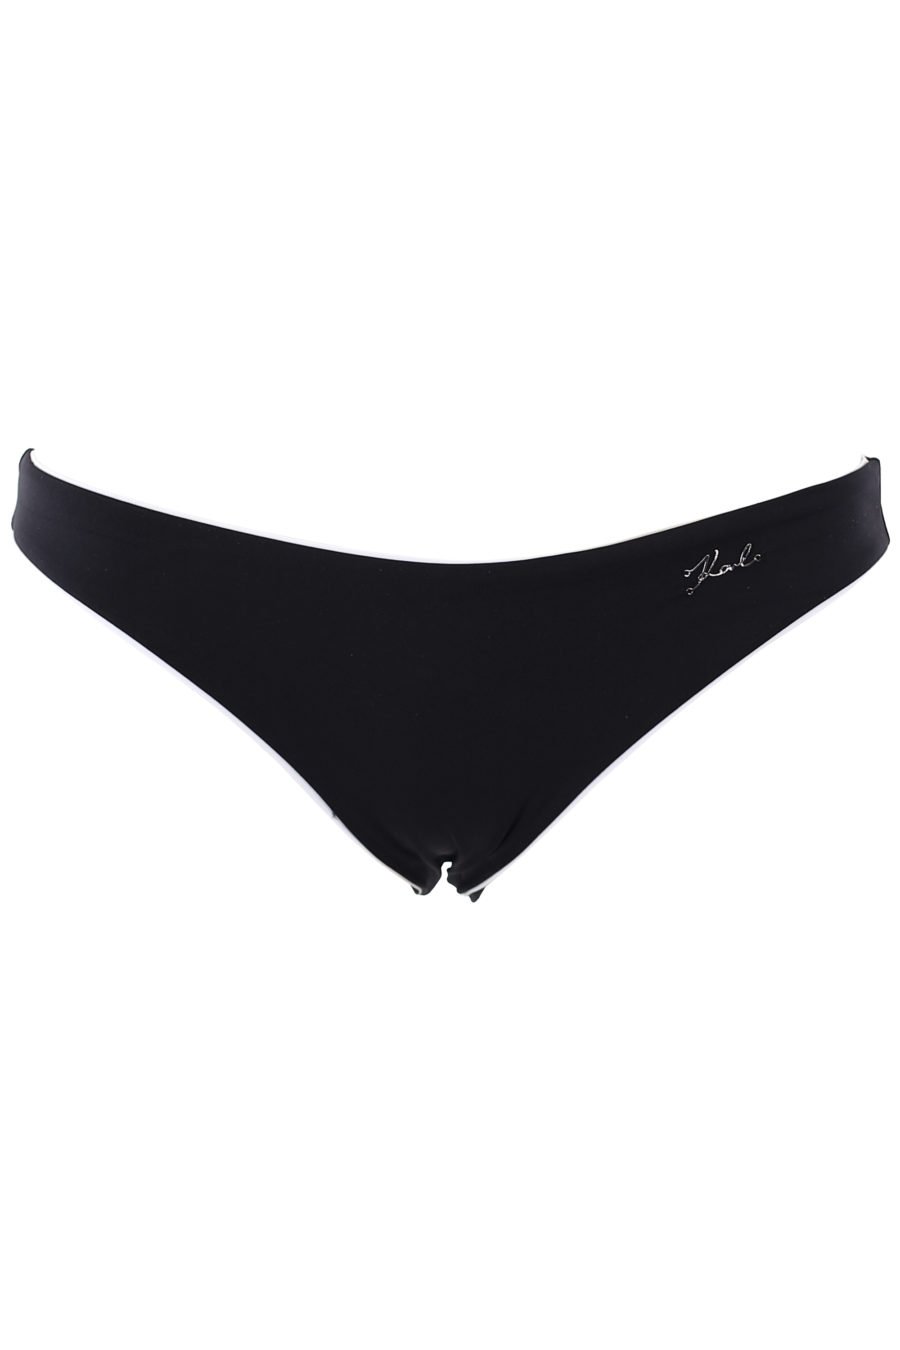 Zweifarbiger schwarzer Badeanzug mit kleinem Metallschriftzug - IMG 1315